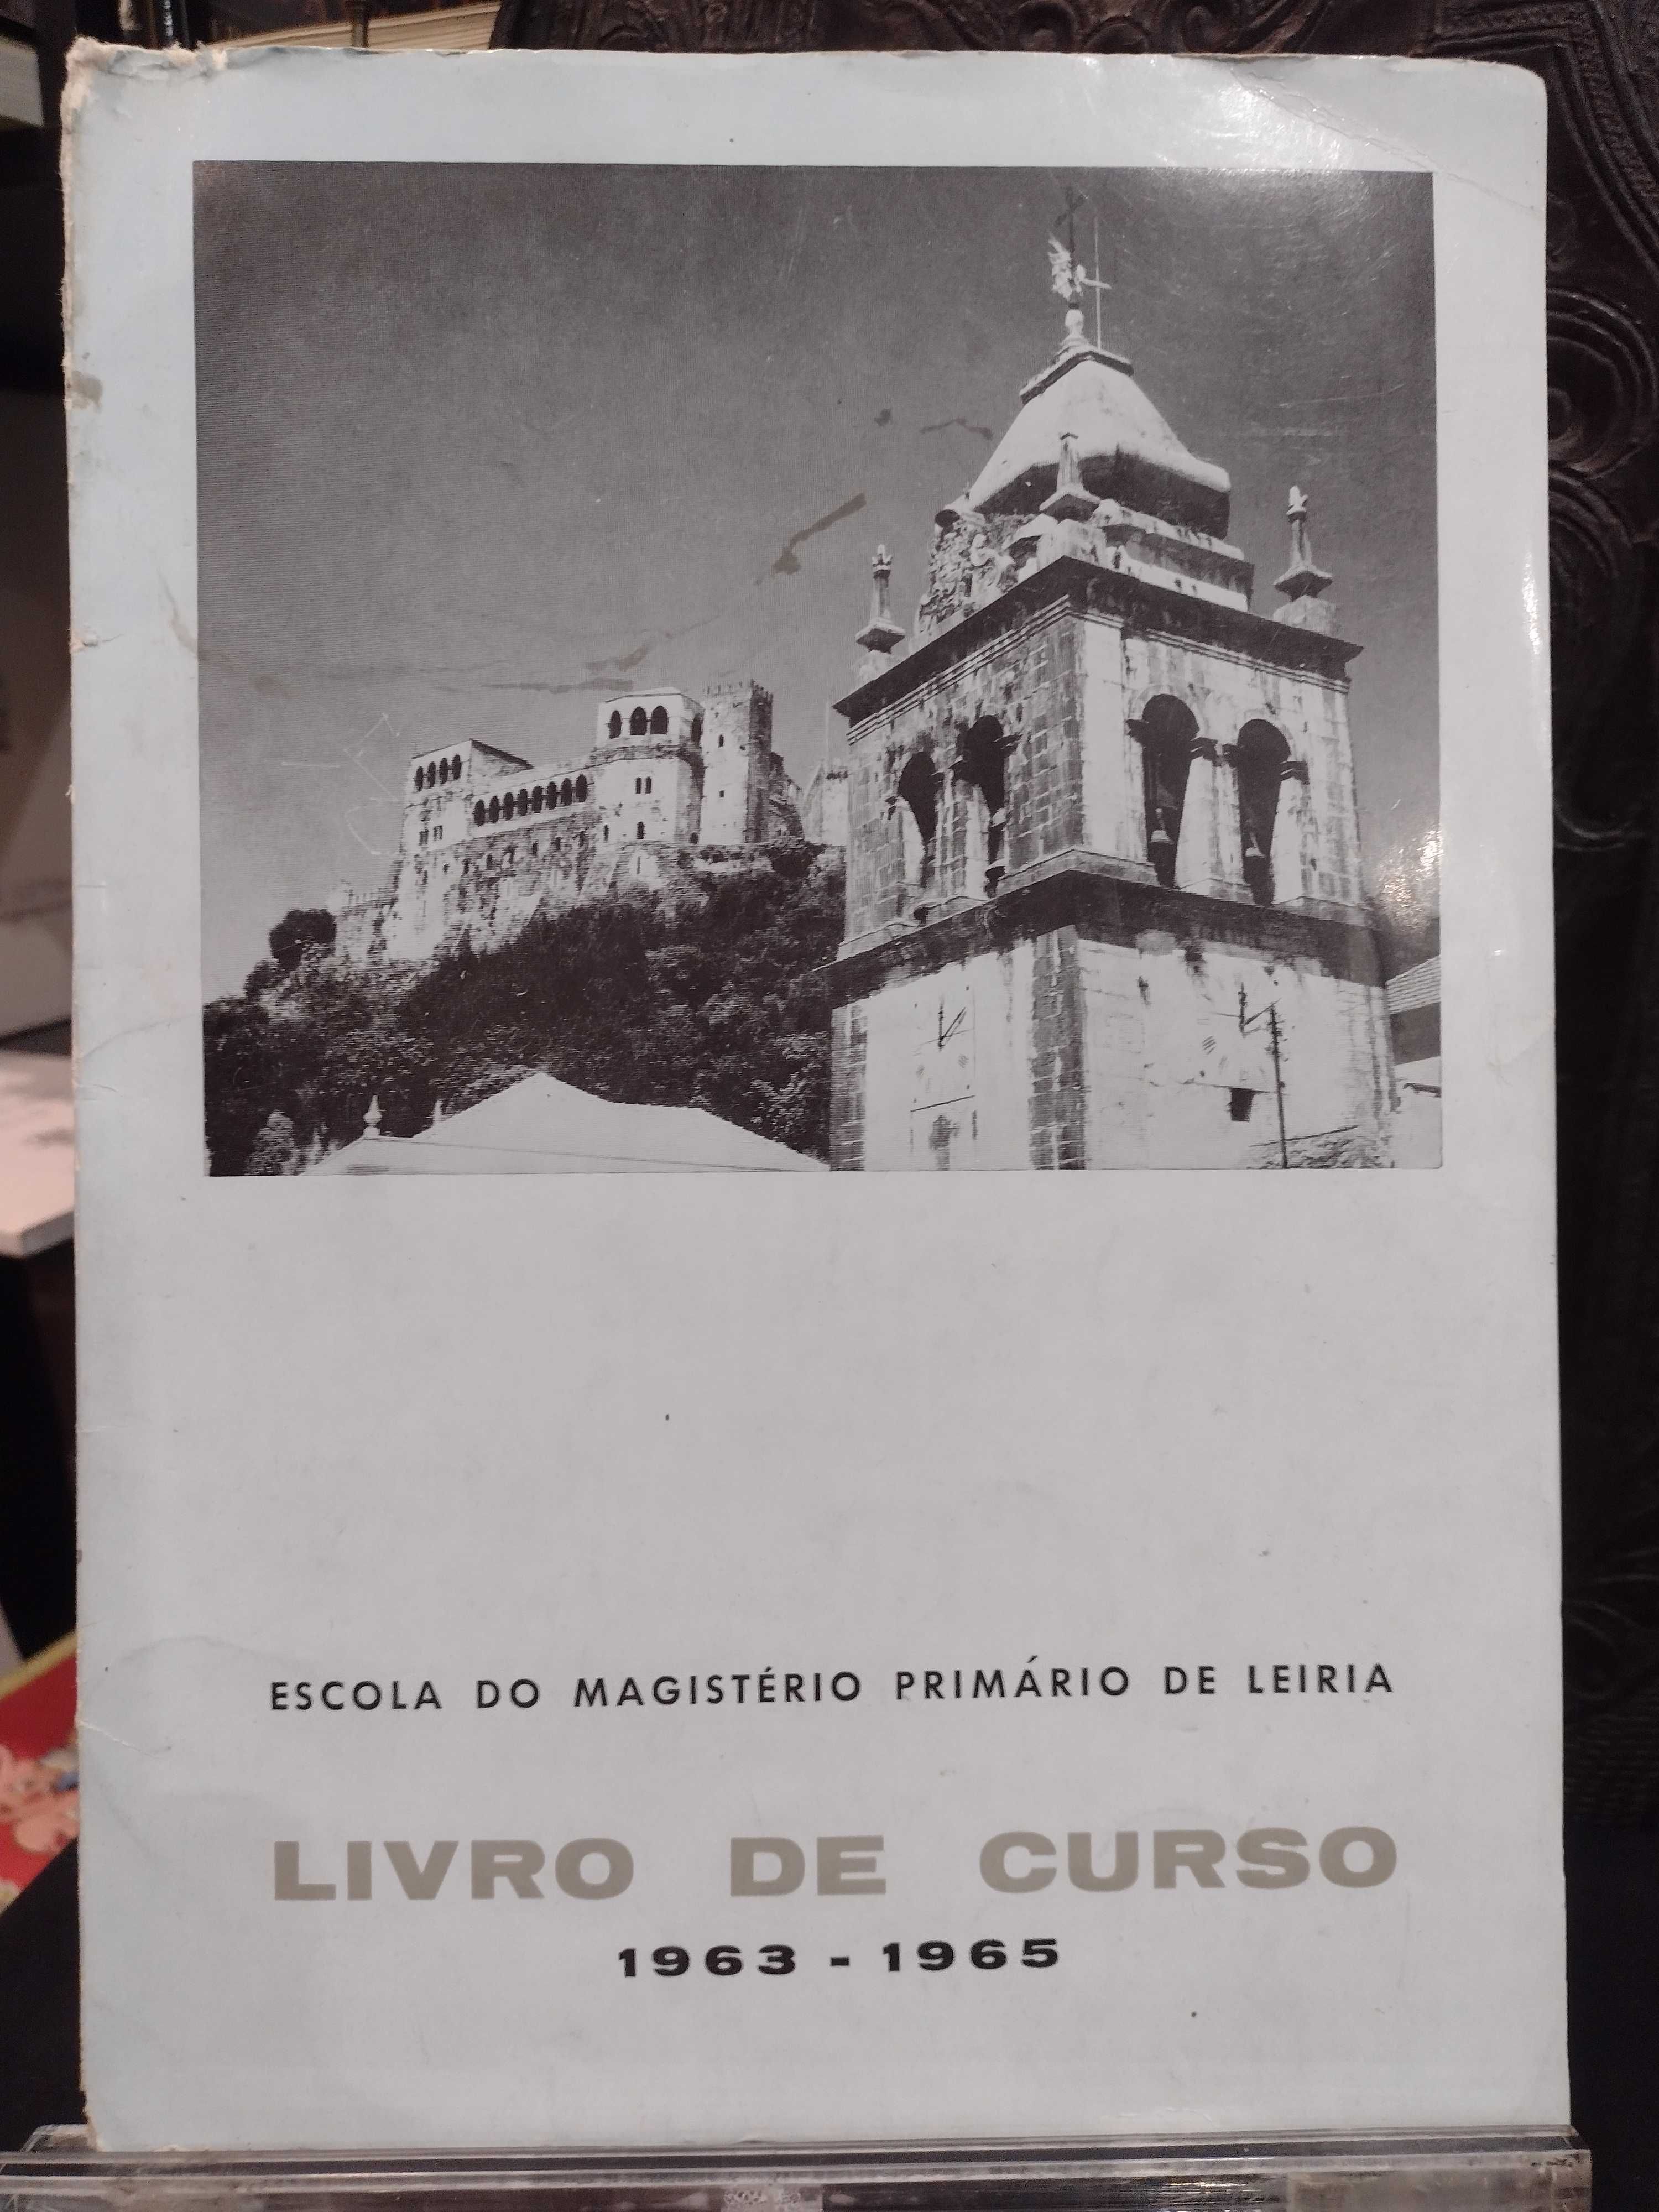 Livro de Curso Escola do Magistério Primário de Leiria 1963-65